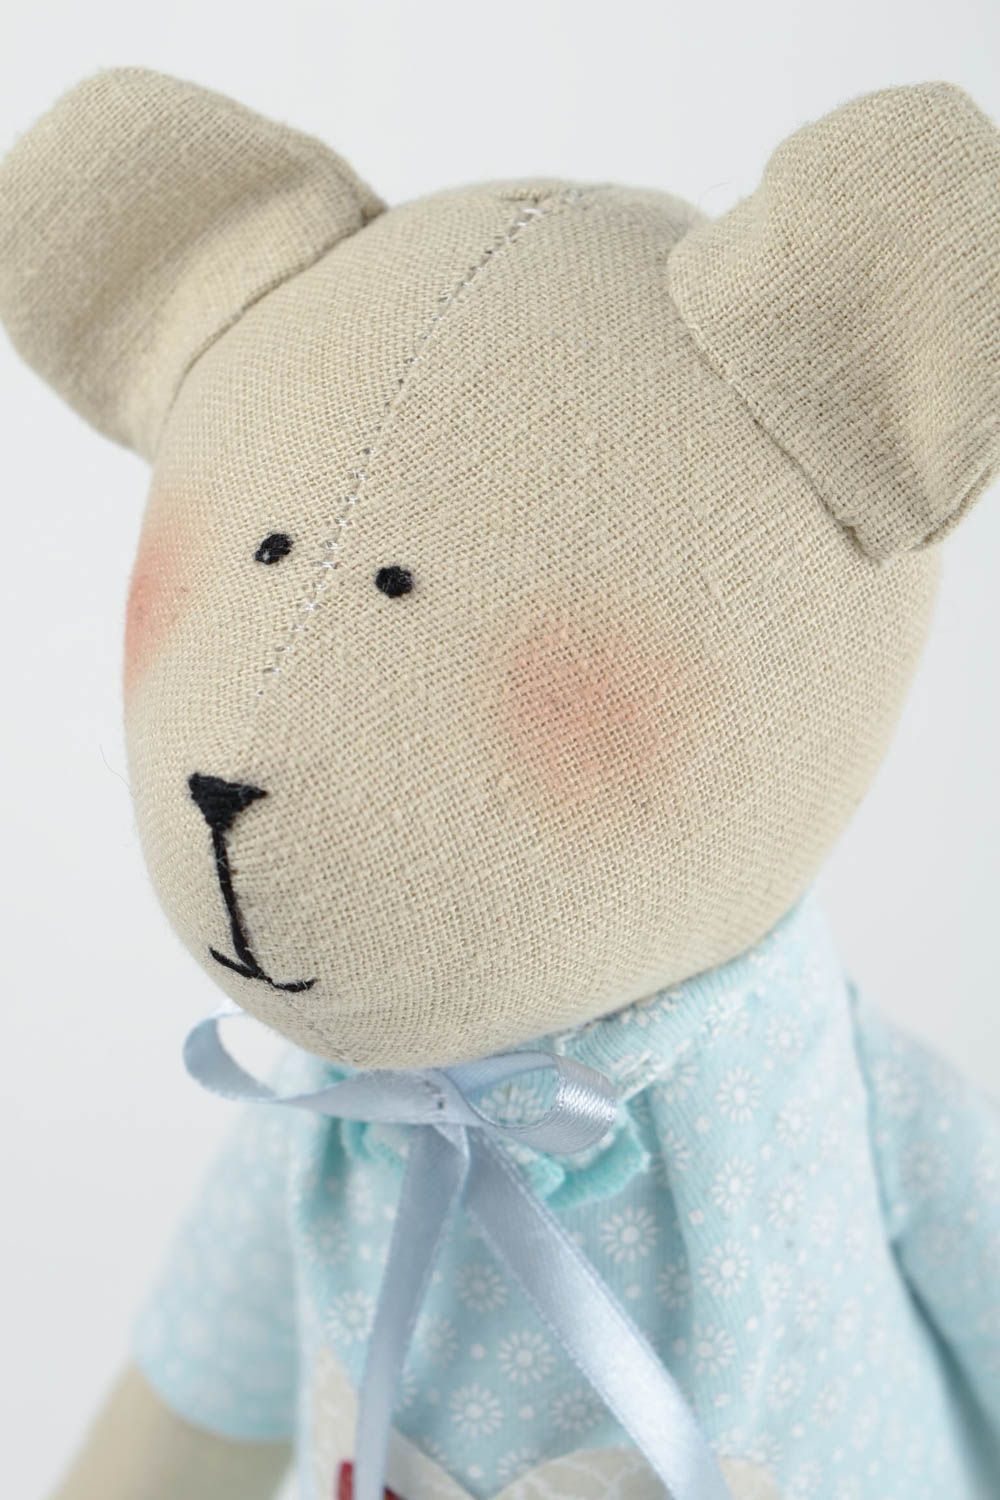 Игрушка мишка из ткани игрушка ручной работы интересный подарок для ребенка фото 3